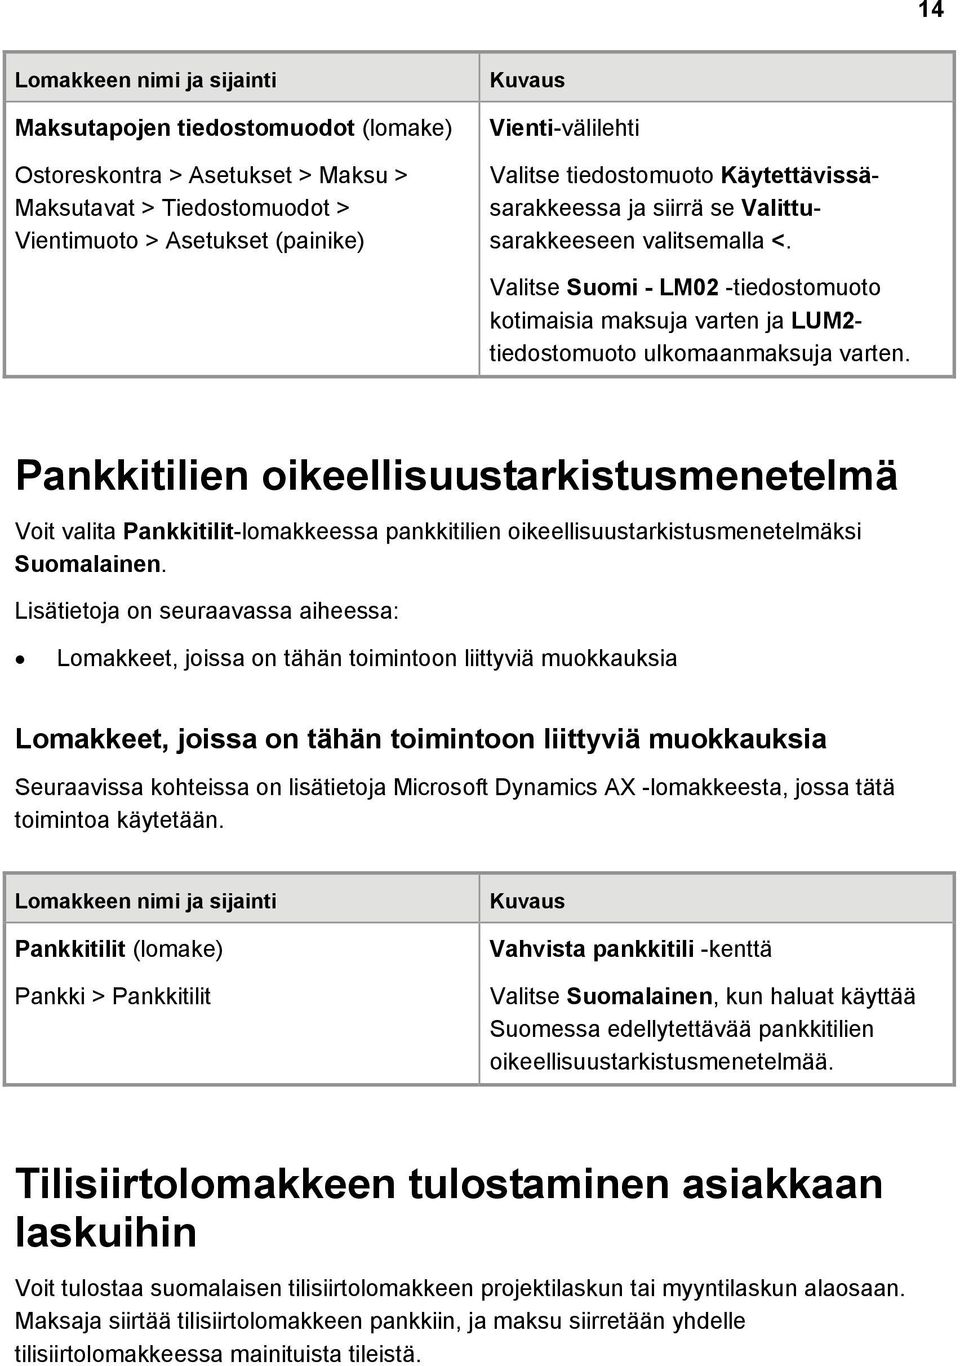 Pankkitilien oikeellisuustarkistusmenetelmä Voit valita Pankkitilit-lomakkeessa pankkitilien oikeellisuustarkistusmenetelmäksi Suomalainen.